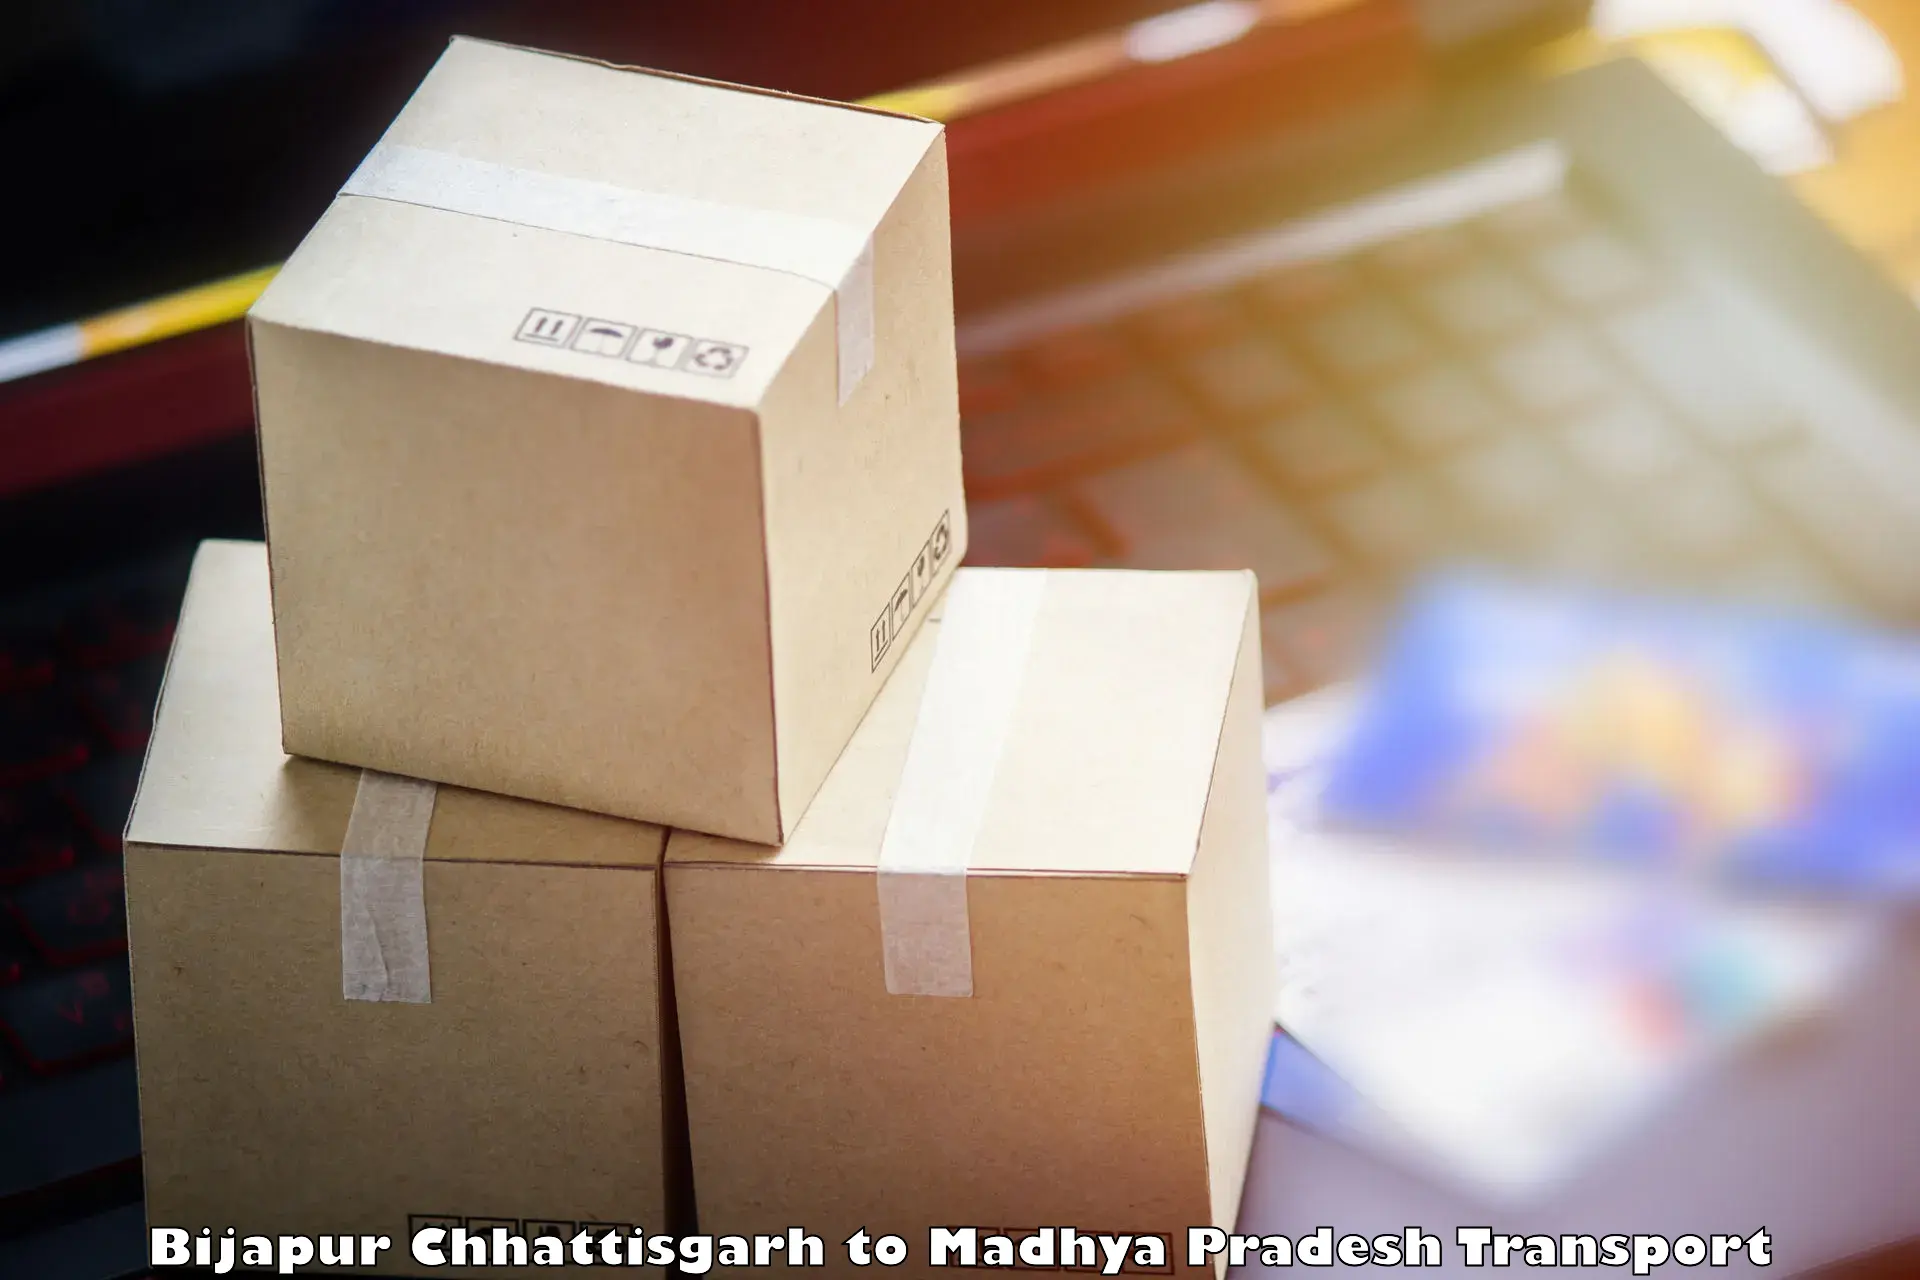 Delivery service Bijapur Chhattisgarh to Udaipura